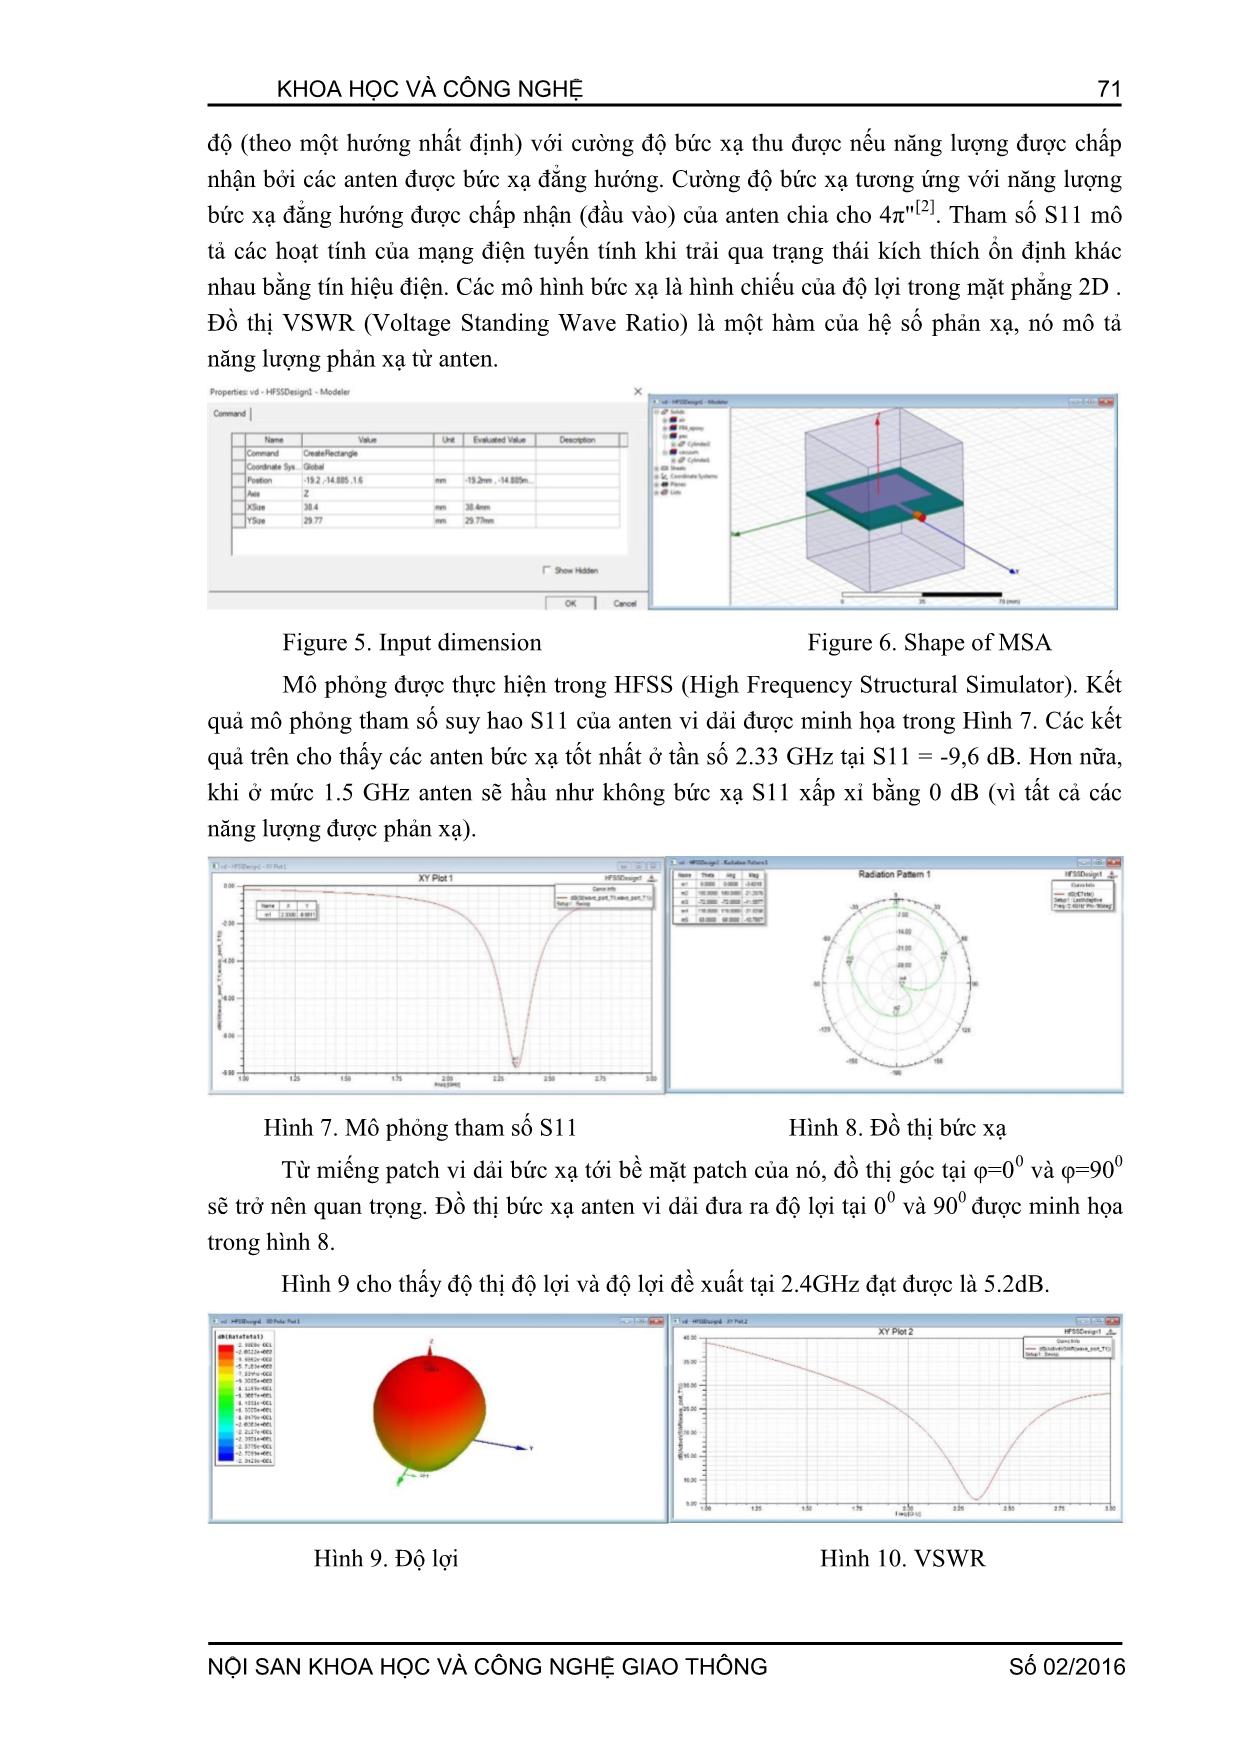 Nghiên cứu sử dụng Matlab và HFSS trong thiết kế anten vi dải trang 5